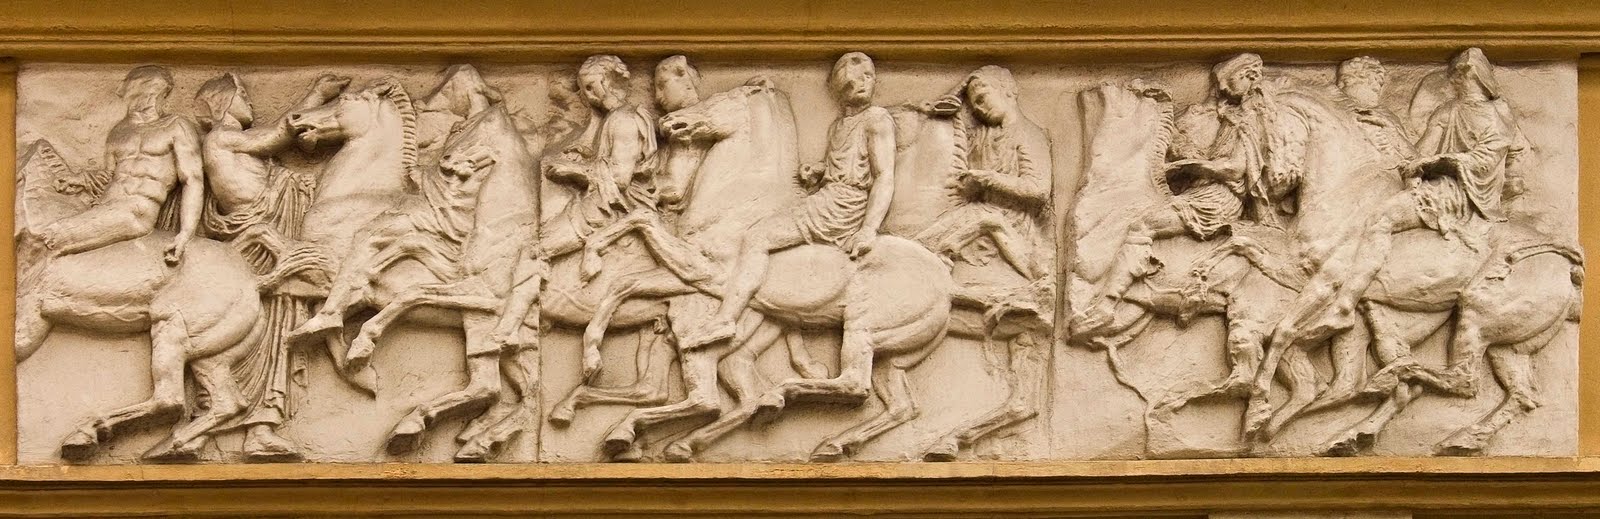 1b Frise du Parthénon Moulage de cavaliers Bas Relief antic Villa St Jacques a copie pm[1]